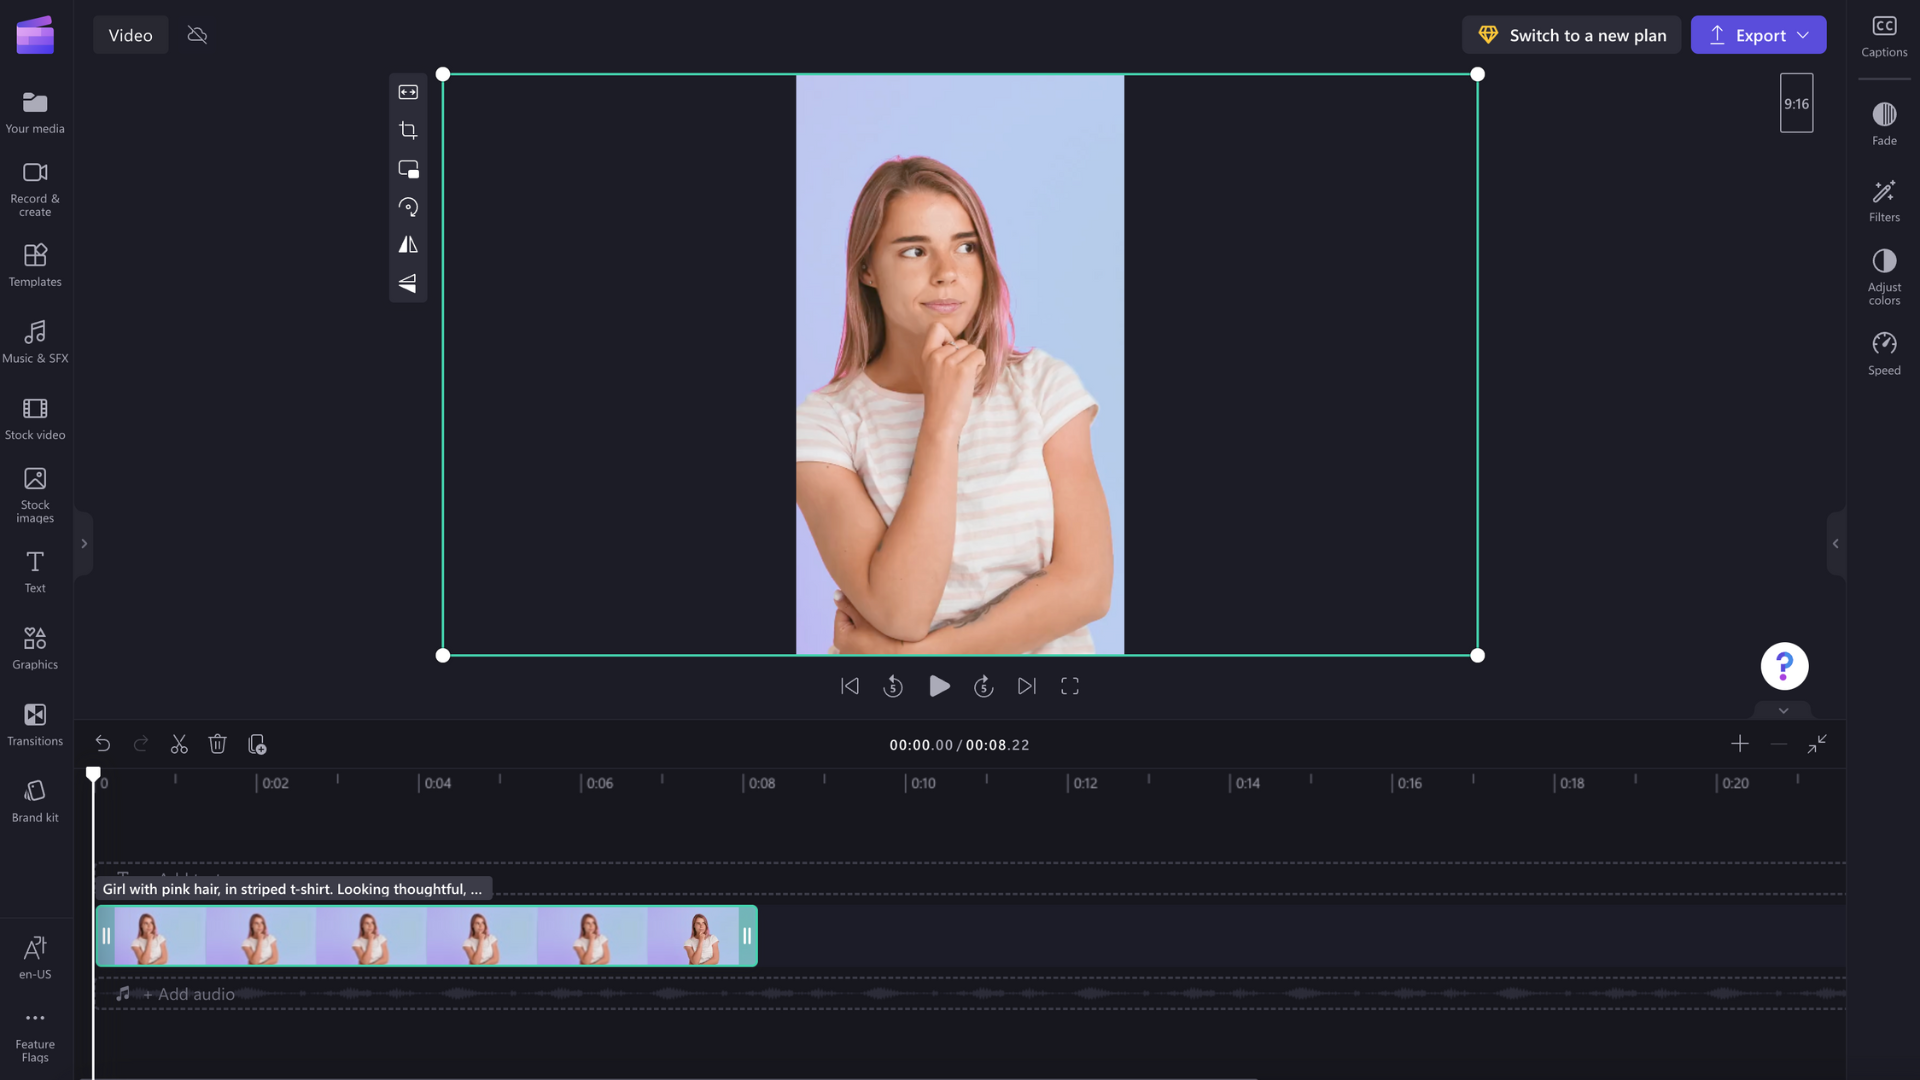 UBAh Aspect Ratio Video giúp bạn tùy biến tỷ lệ khung hình cho đoạn video một cách dễ dàng và nhanh chóng. Điều chỉnh và thay đổi tỷ lệ khung hình cho đoạn video mà không làm ảnh hưởng đến chất lượng. Nhấn vào ảnh để tìm hiểu thêm sản phẩm này!